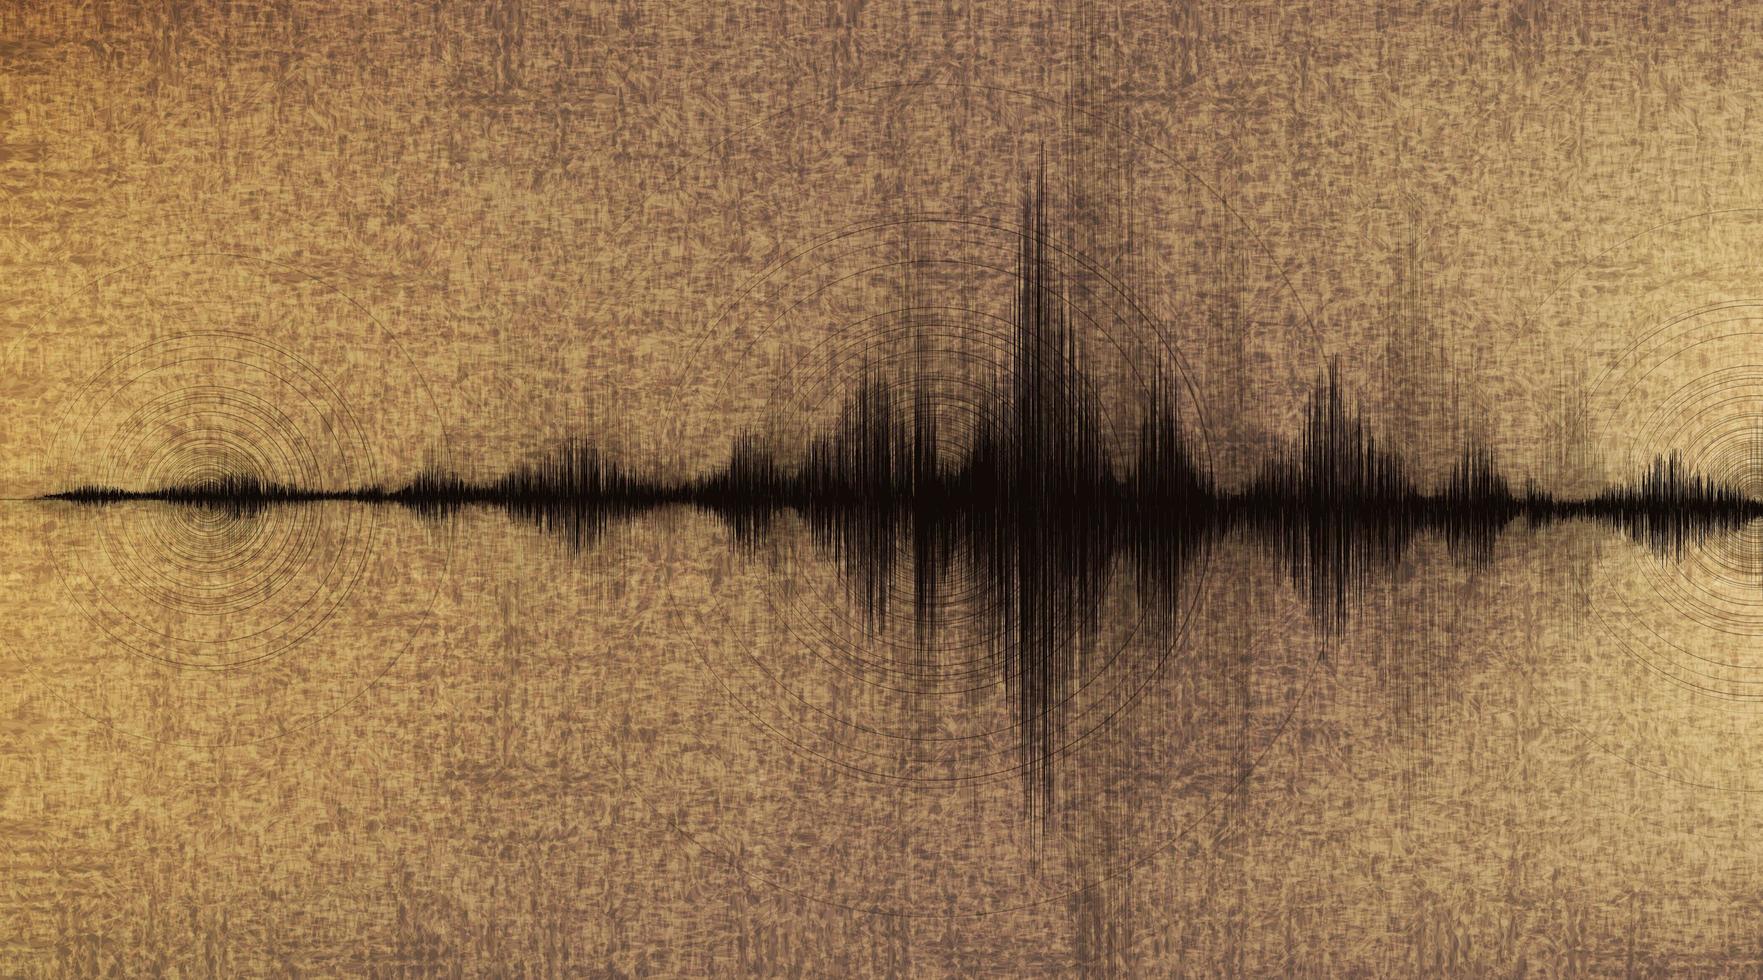 Erdbebenwelle niedrig und hoch Richterskala mit Kreisvibration auf altem Papierhintergrund vektor